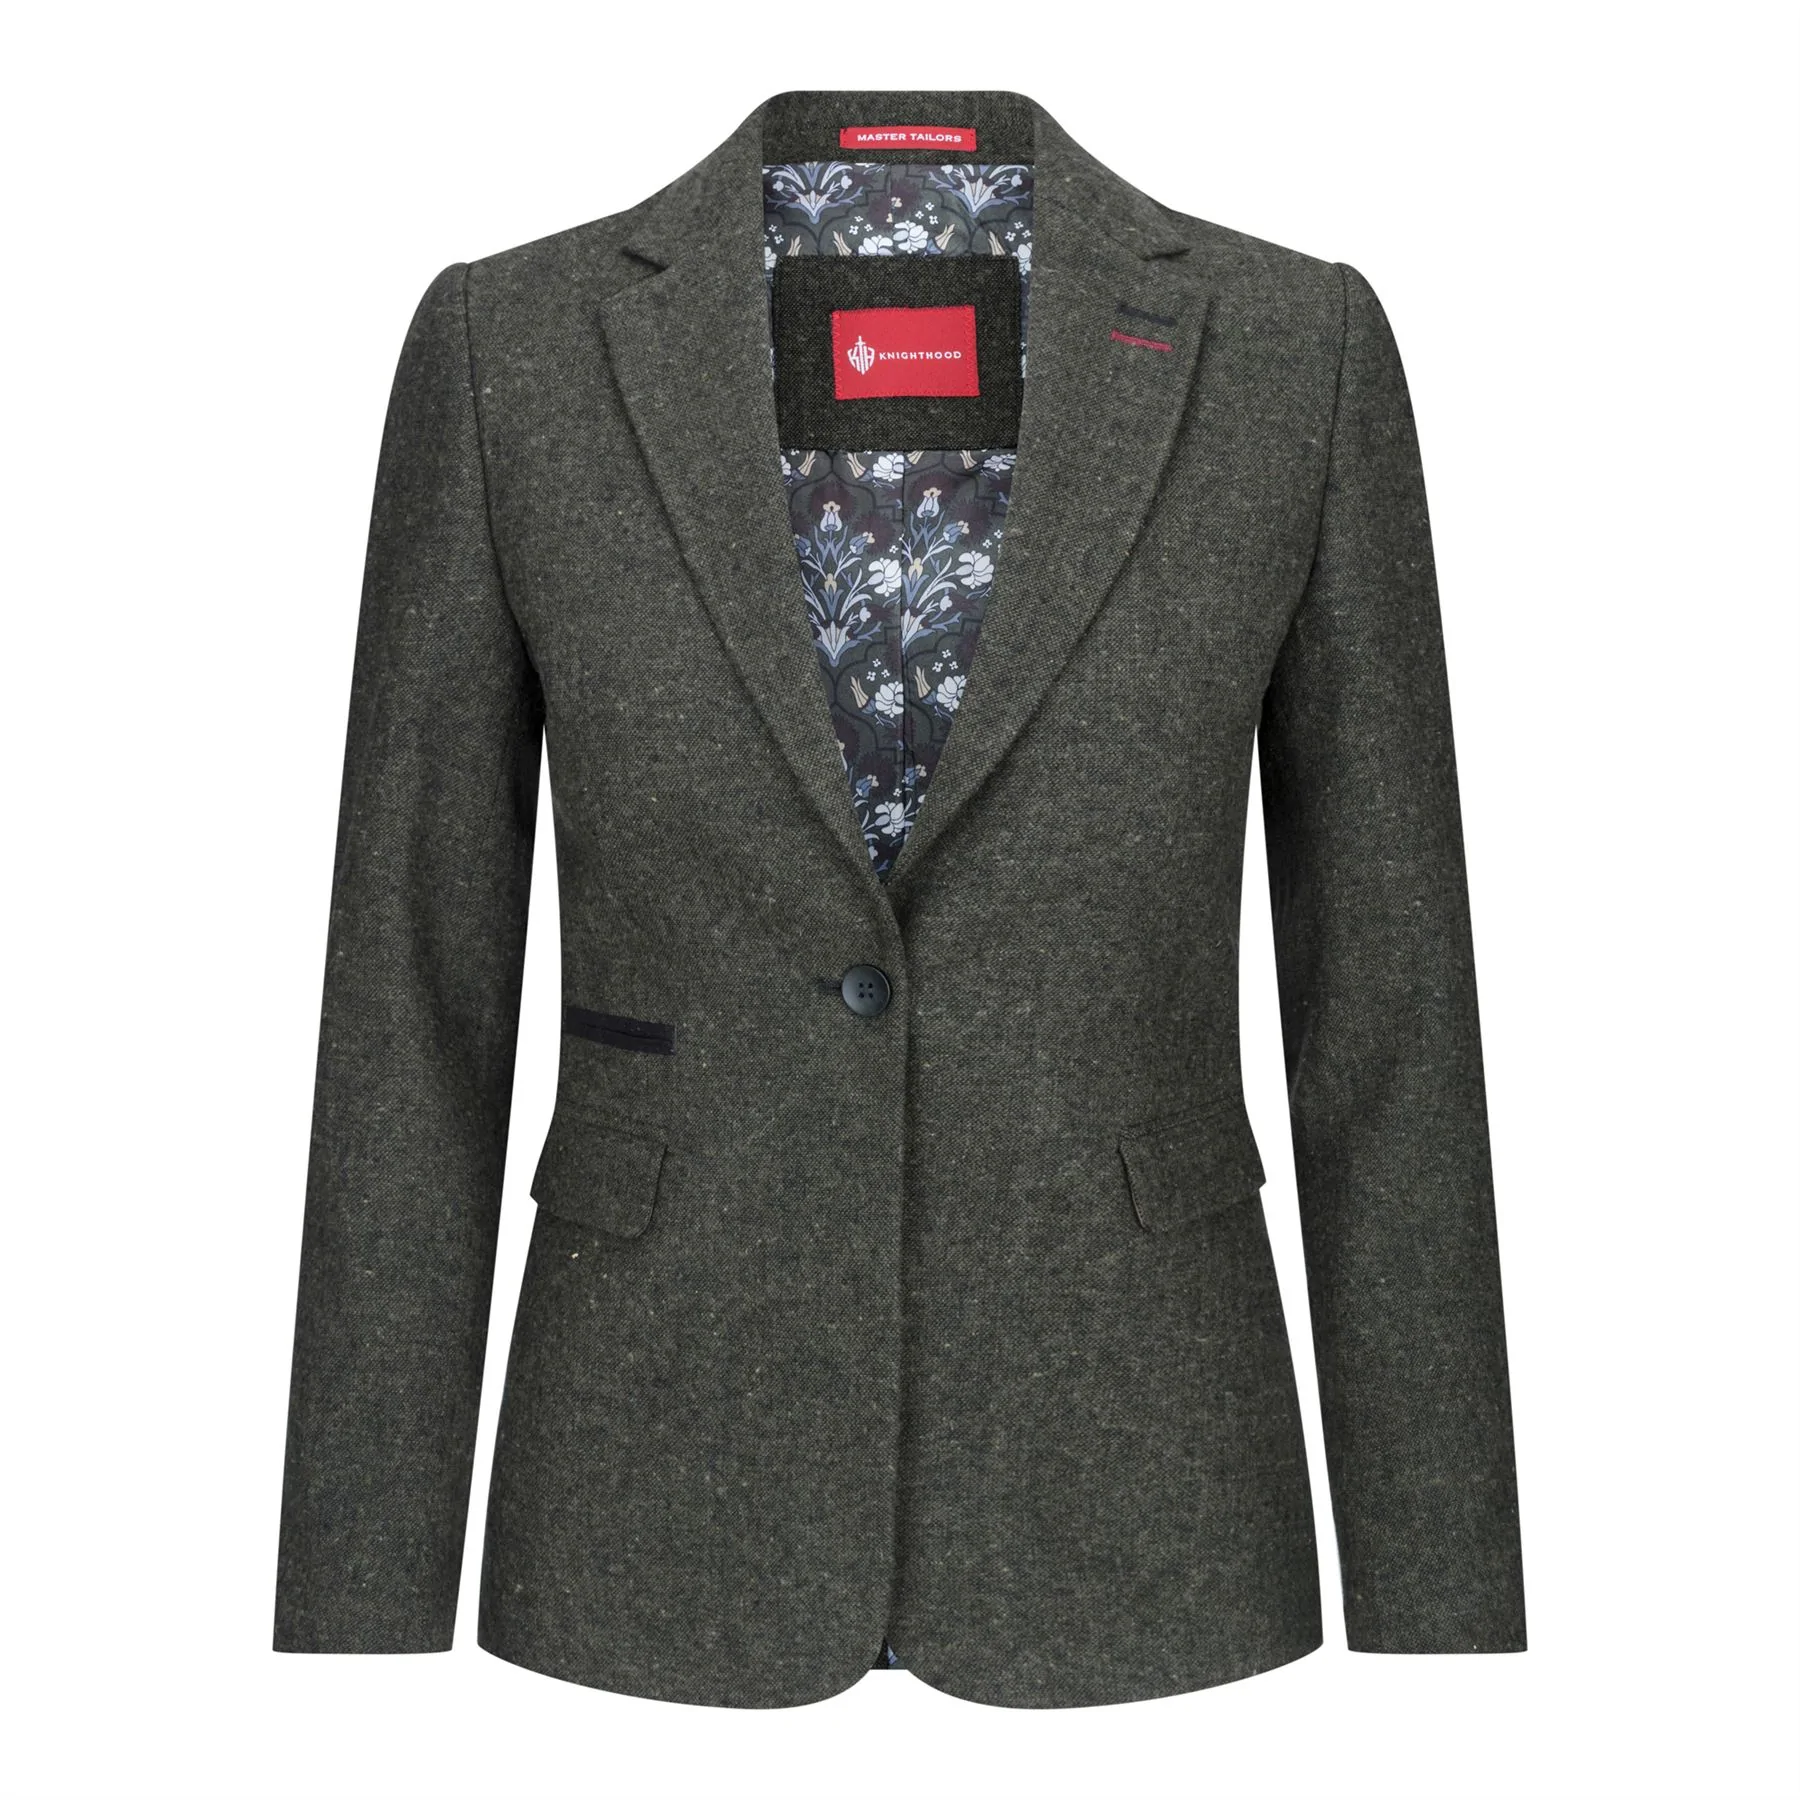 Damen Blazer Anzug Wolle Tweed Ellenbogen Patch 1920s Vintage Klassisch Grün